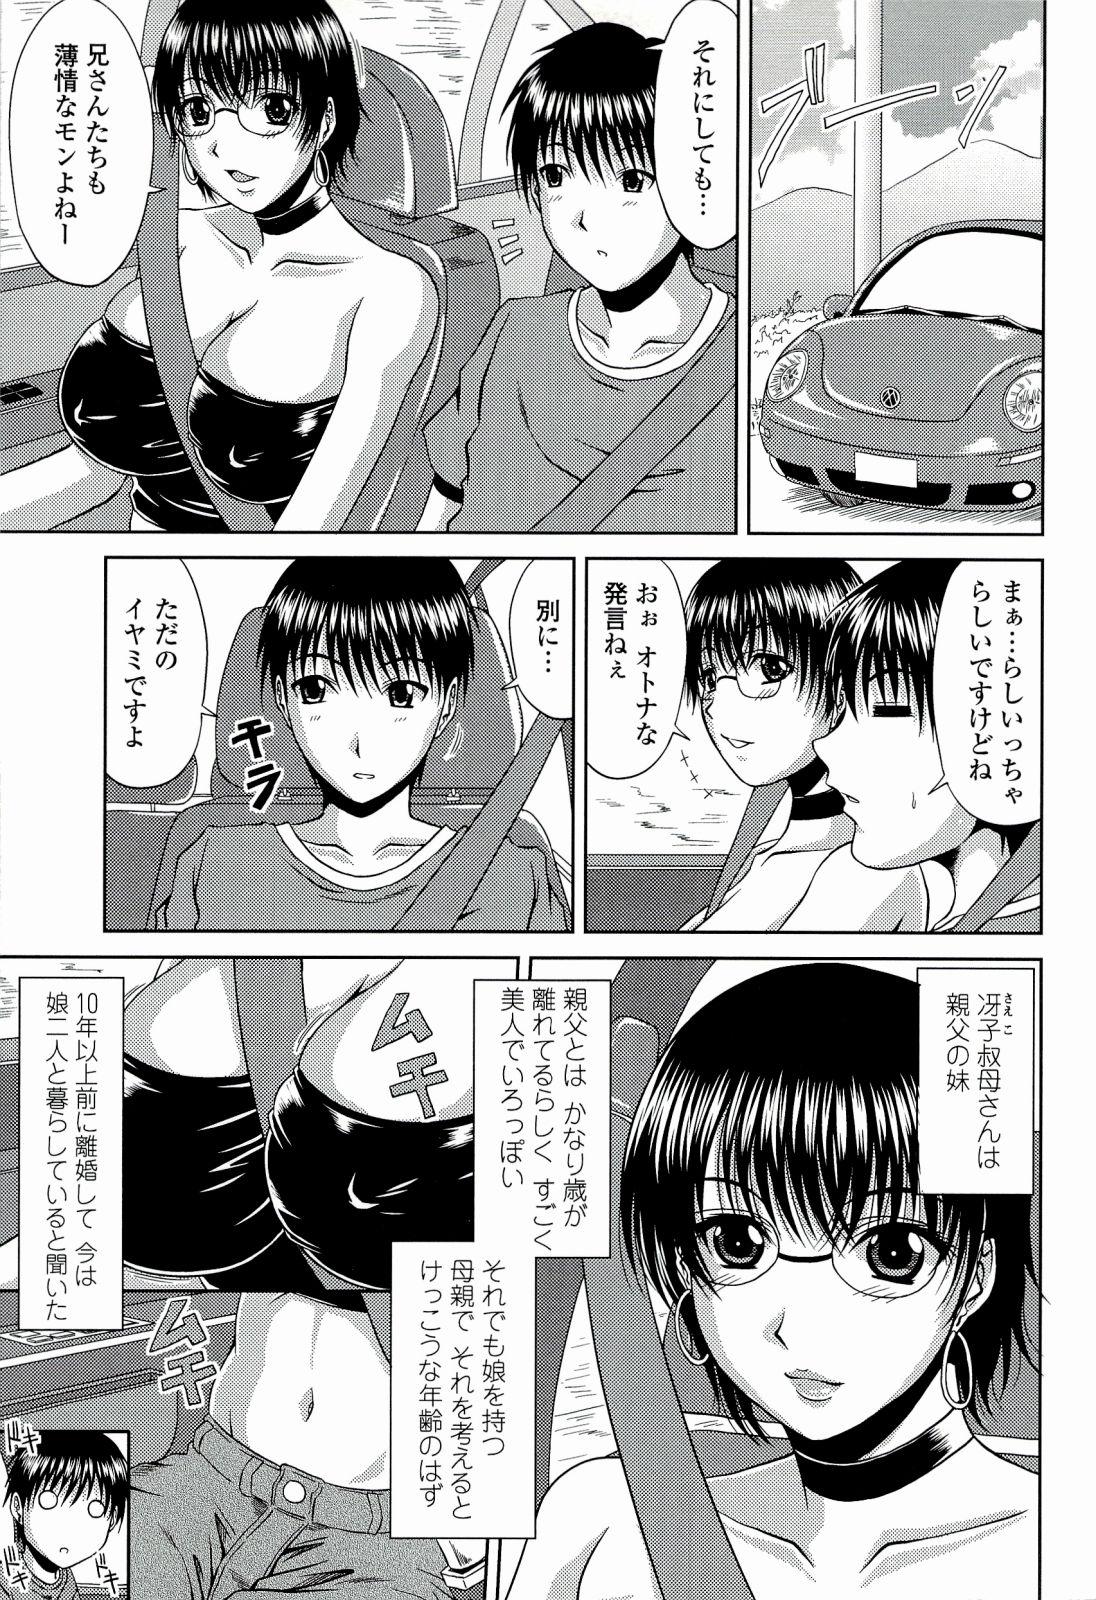 Forbidden Manatsu no Hanazono 8teen - Page 7